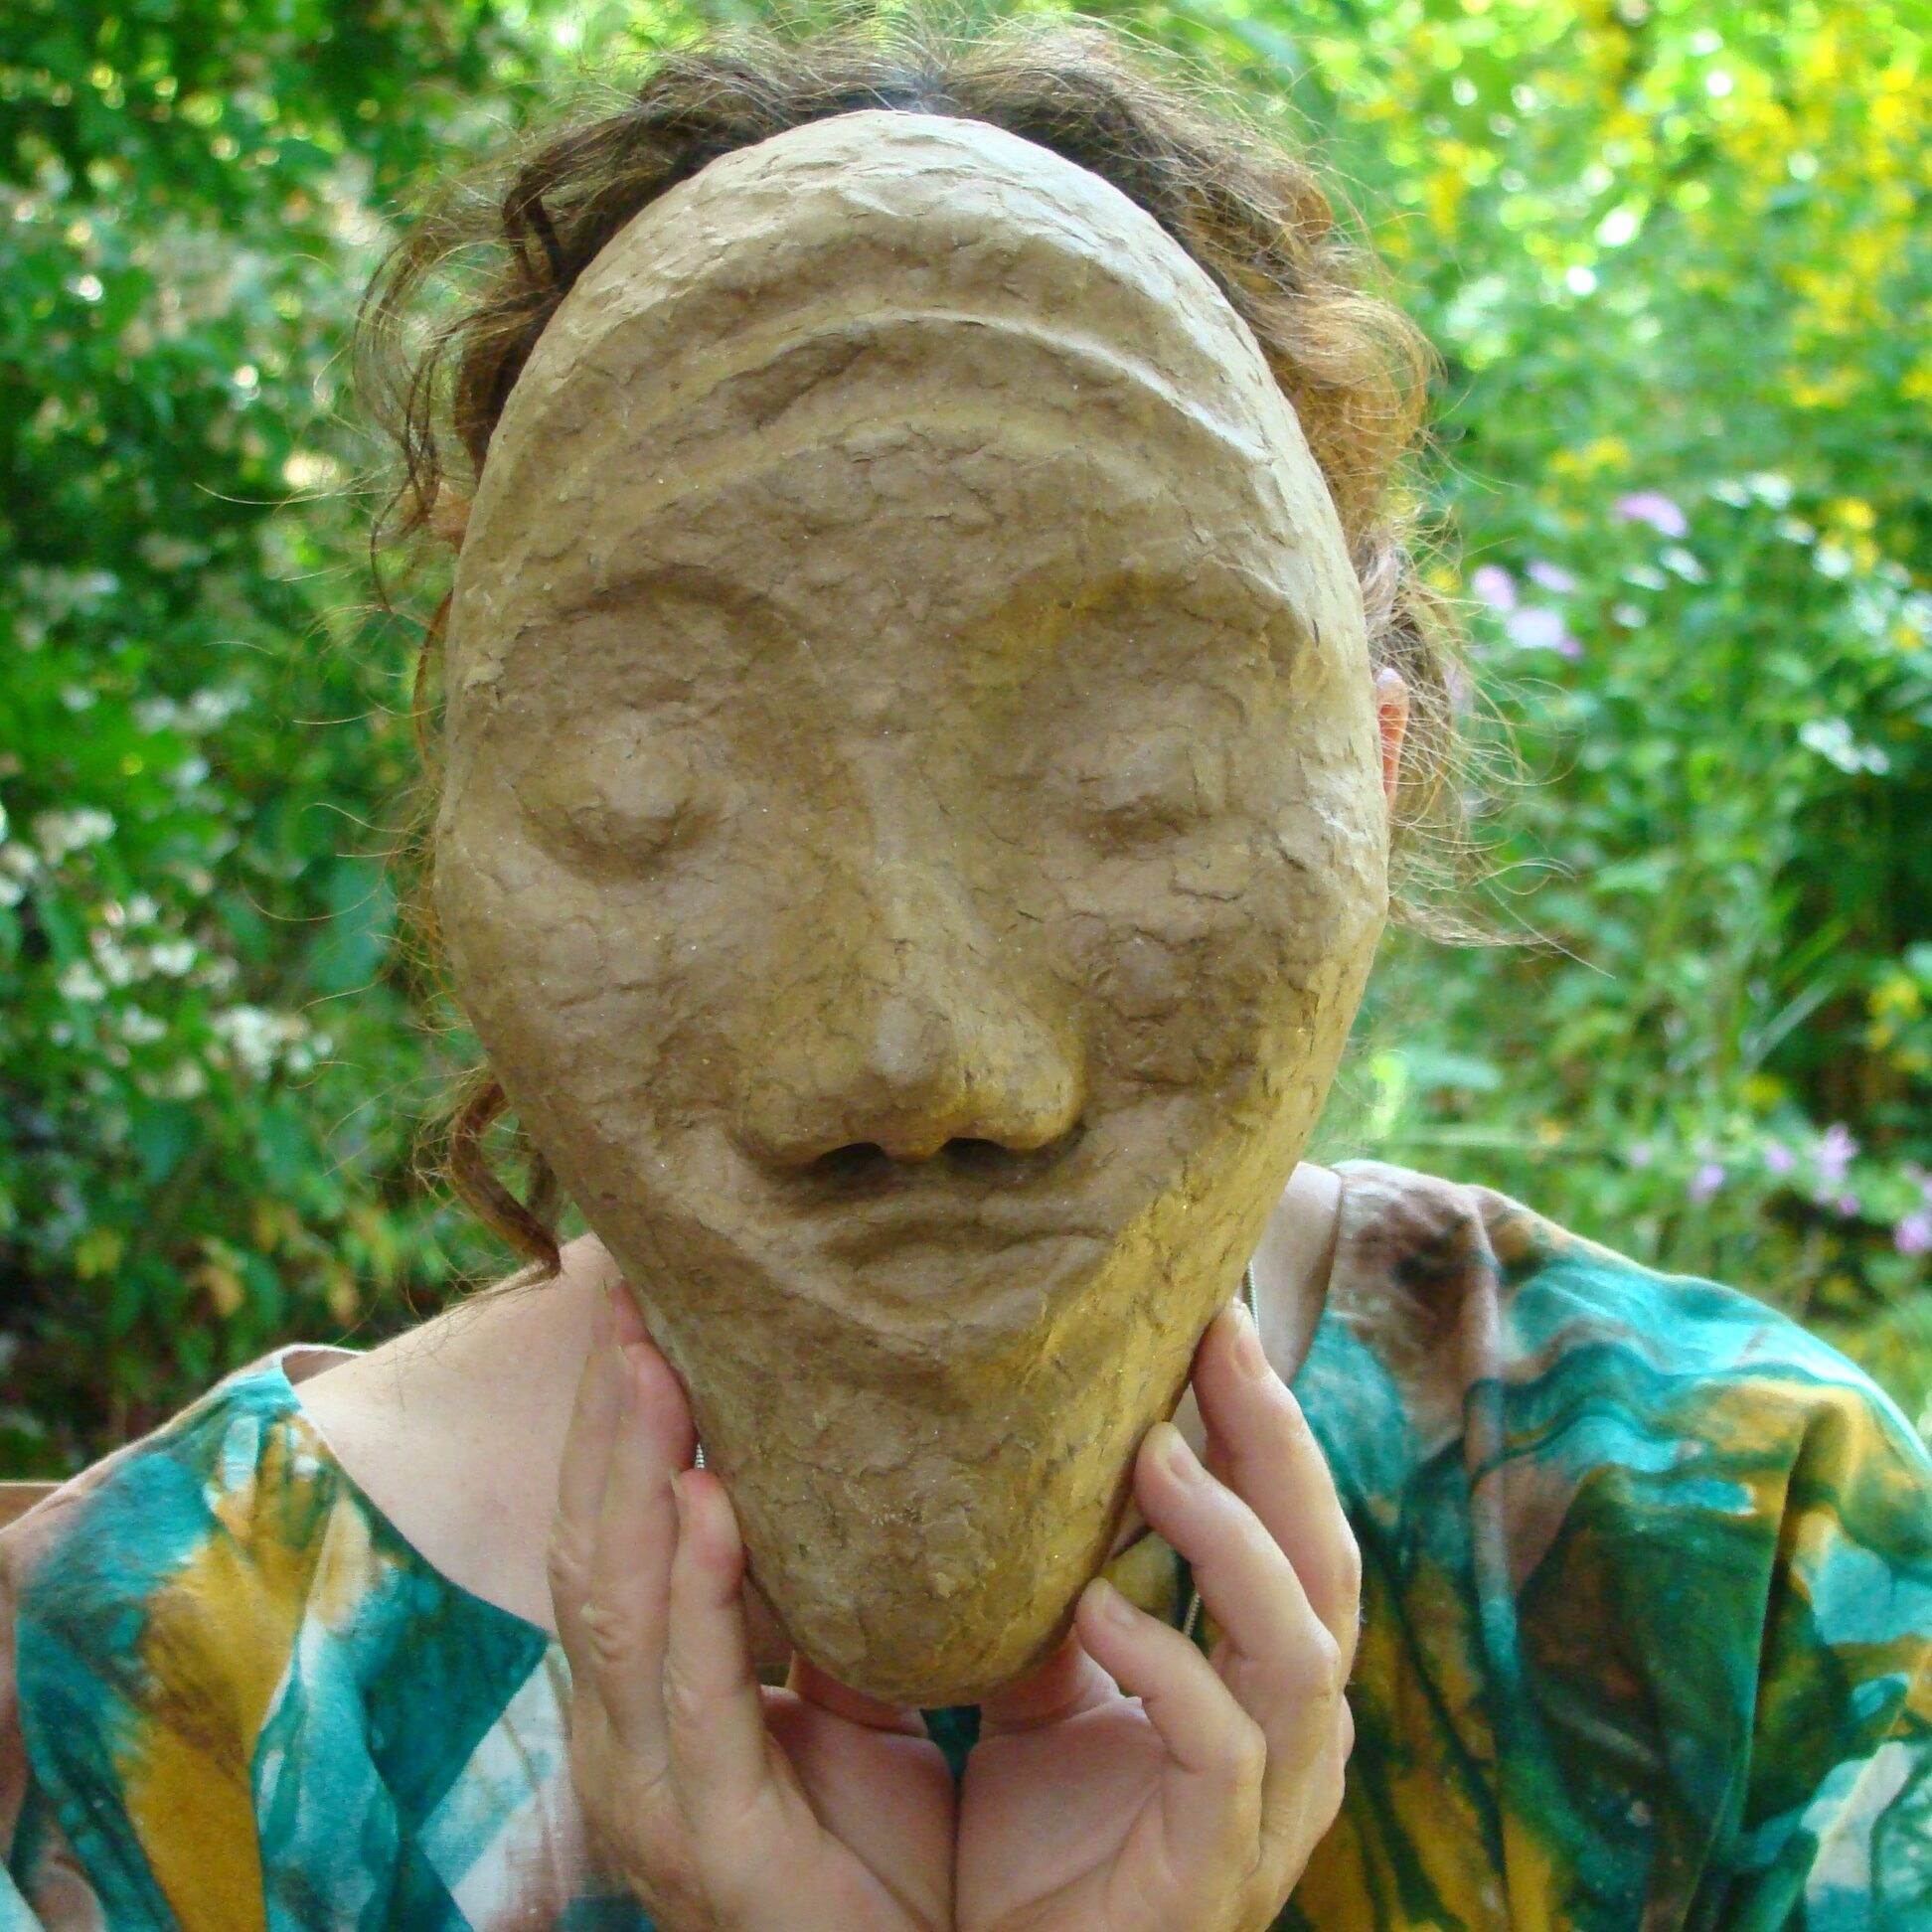 Person hält unbemalte Maske vor ihr Gesicht, Ausdruck der Maske is tverspielt.